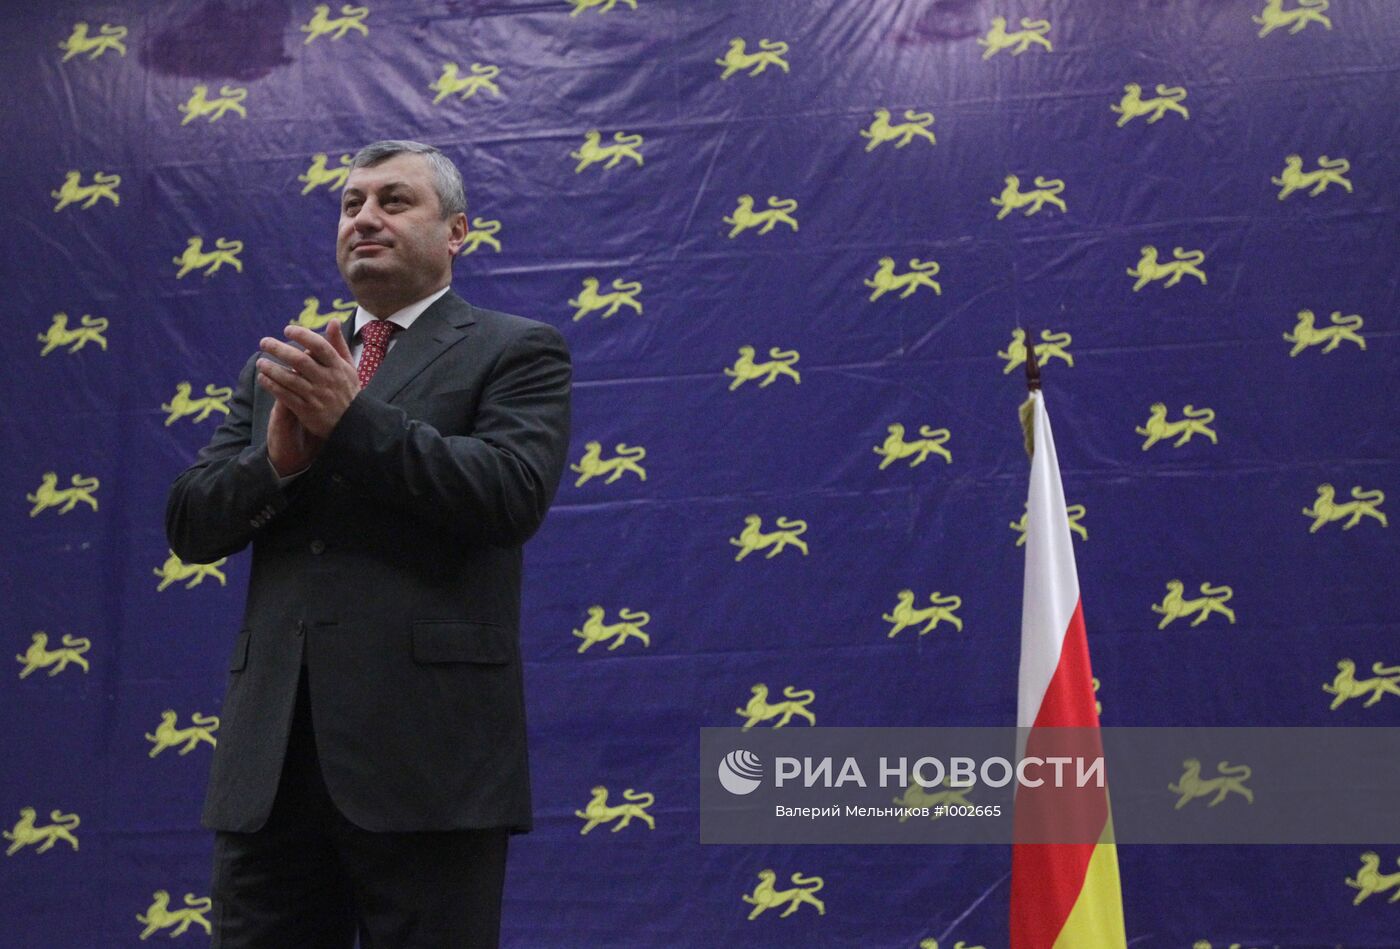 Президент Южной Осетии Э.Кокойты объявил о своей отставке